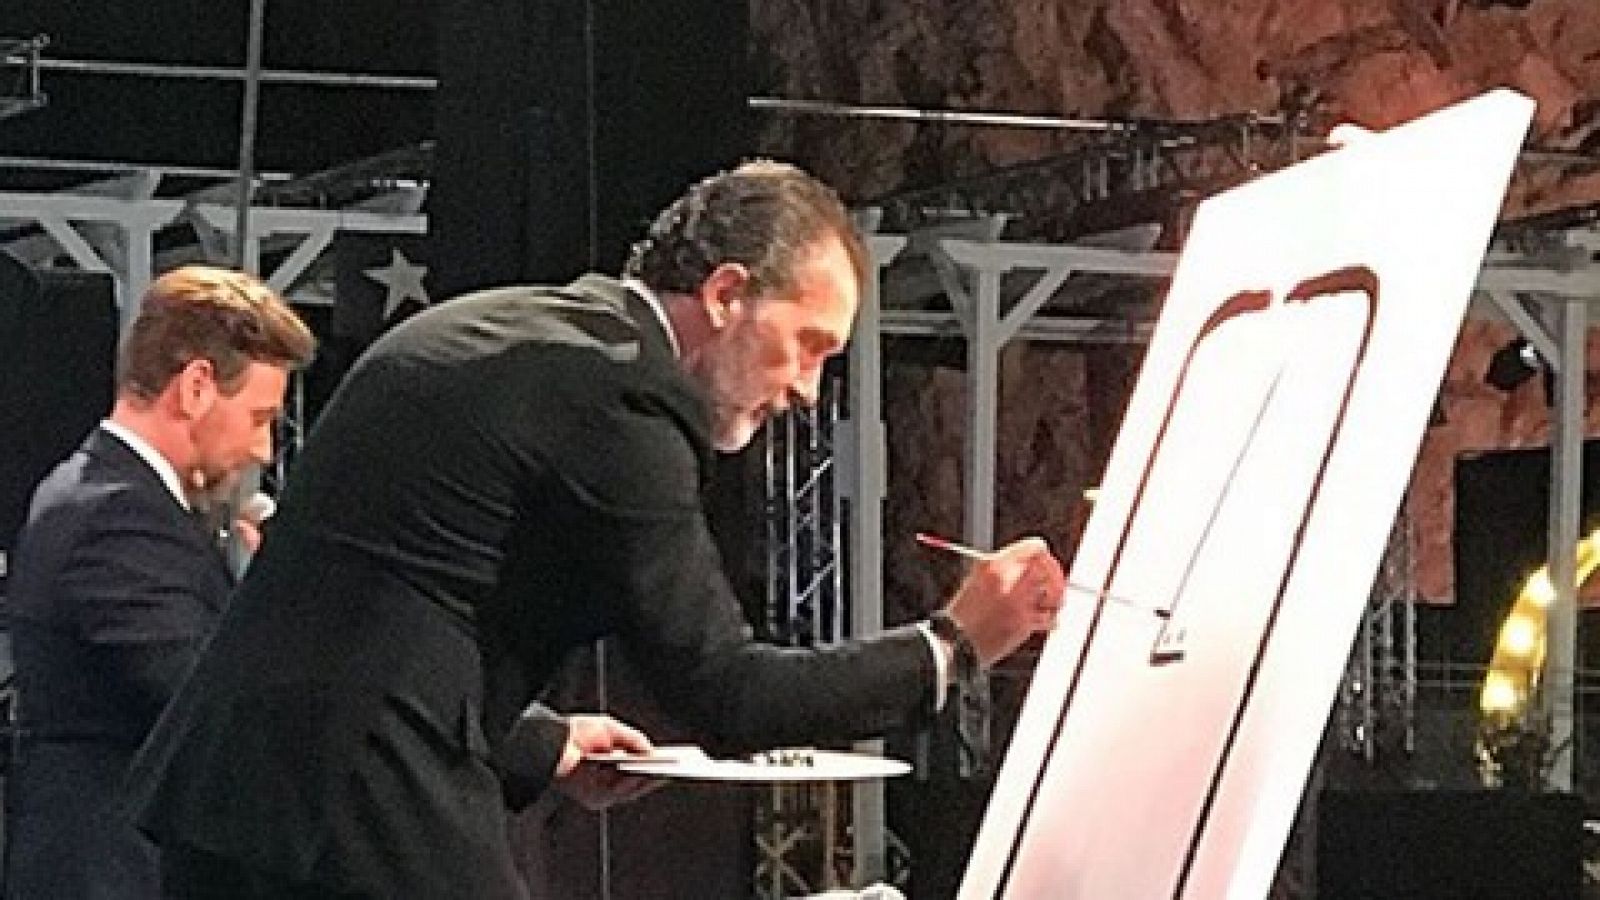 Corazón - Antonio Banderas recaudó 20.000 euros con el cuadro picassiano que improvisó sobre el escenario